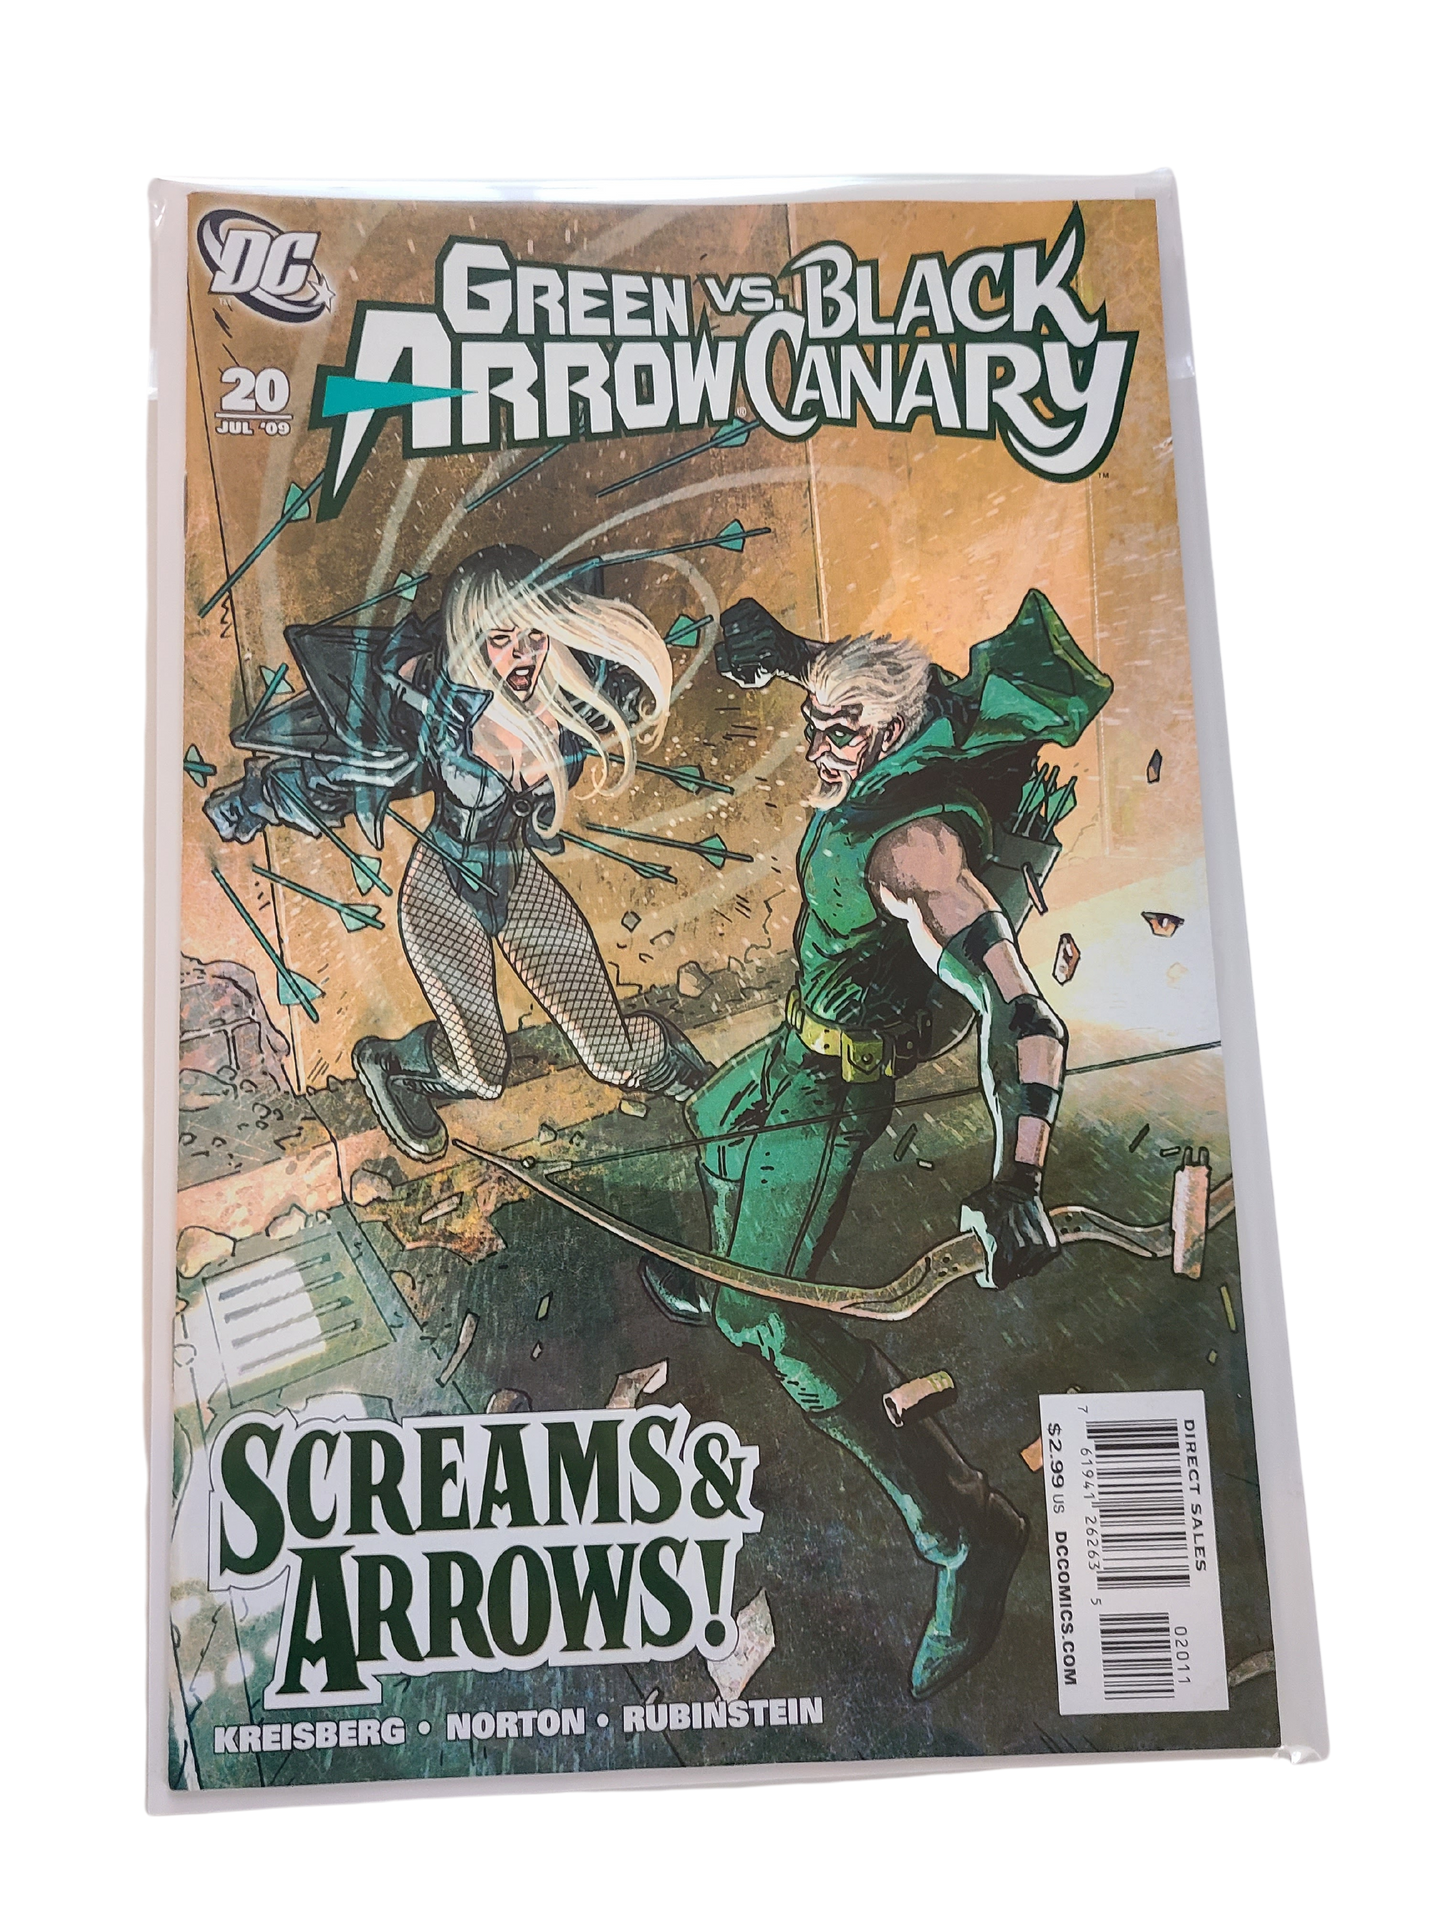 Green Arrow Vs Black Canary #20 - Screams & Arrows